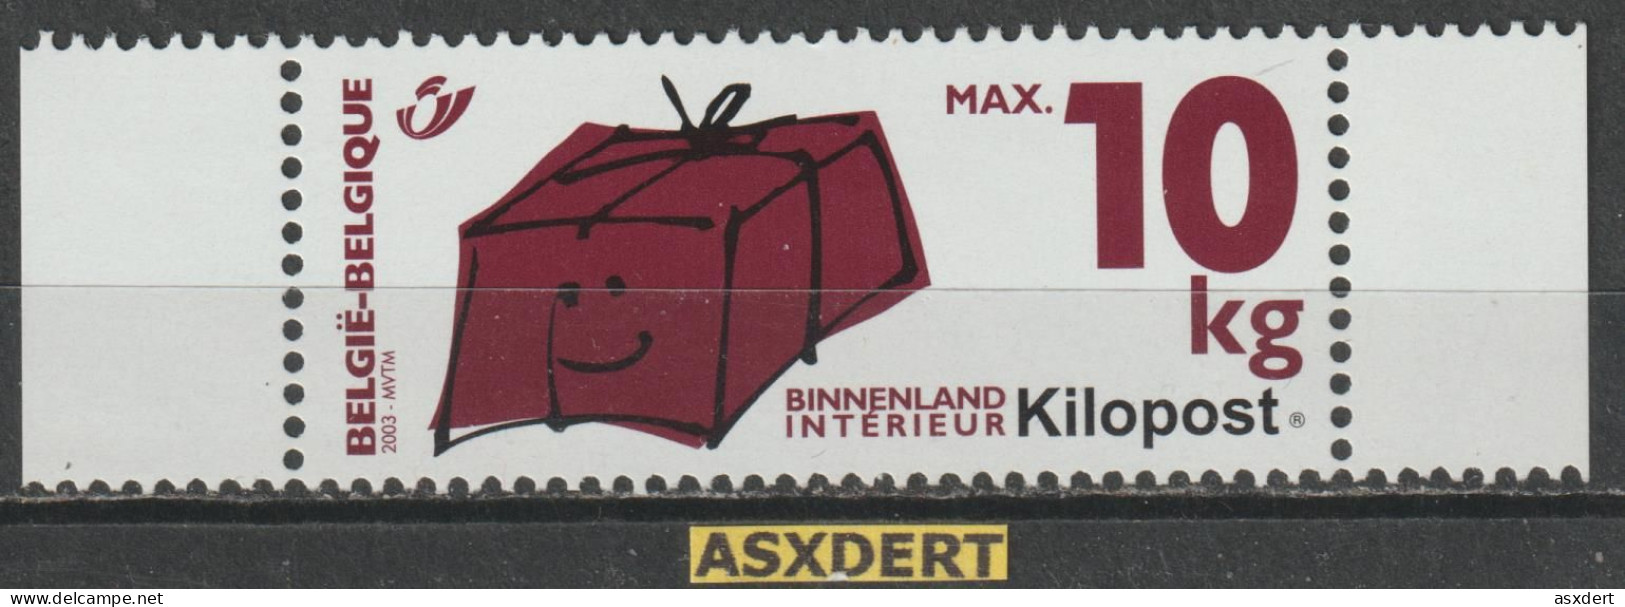 Ki 7 **  Kilopost - Binnenland Max.10 Kgr. - Kilopost 2003-2015 [Ki]